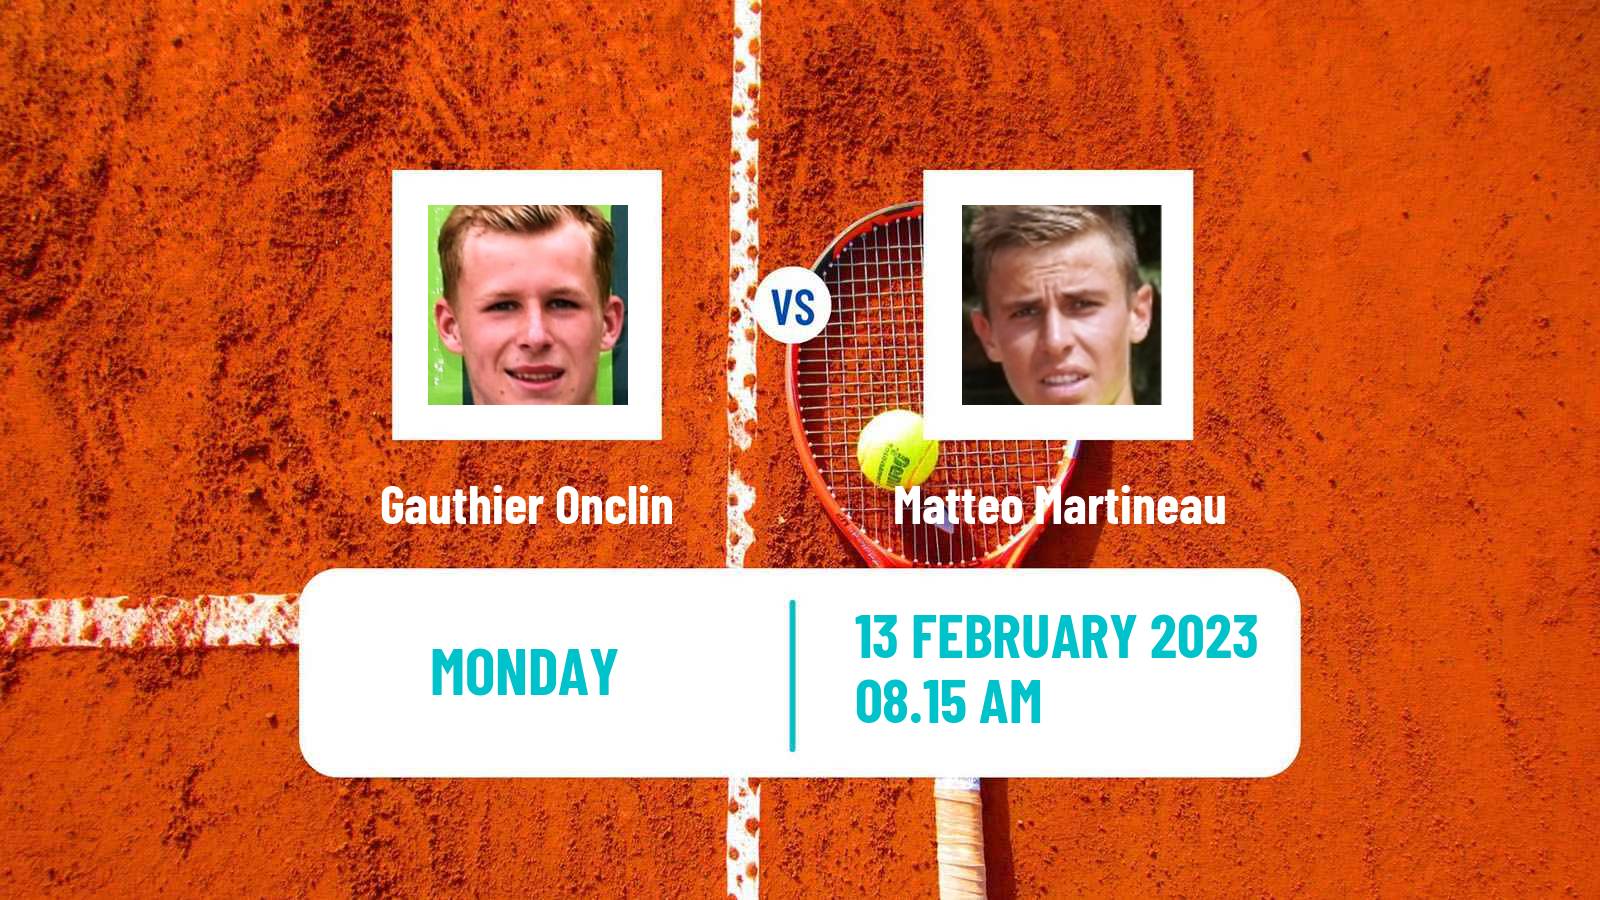 Tennis ATP Challenger Gauthier Onclin - Matteo Martineau